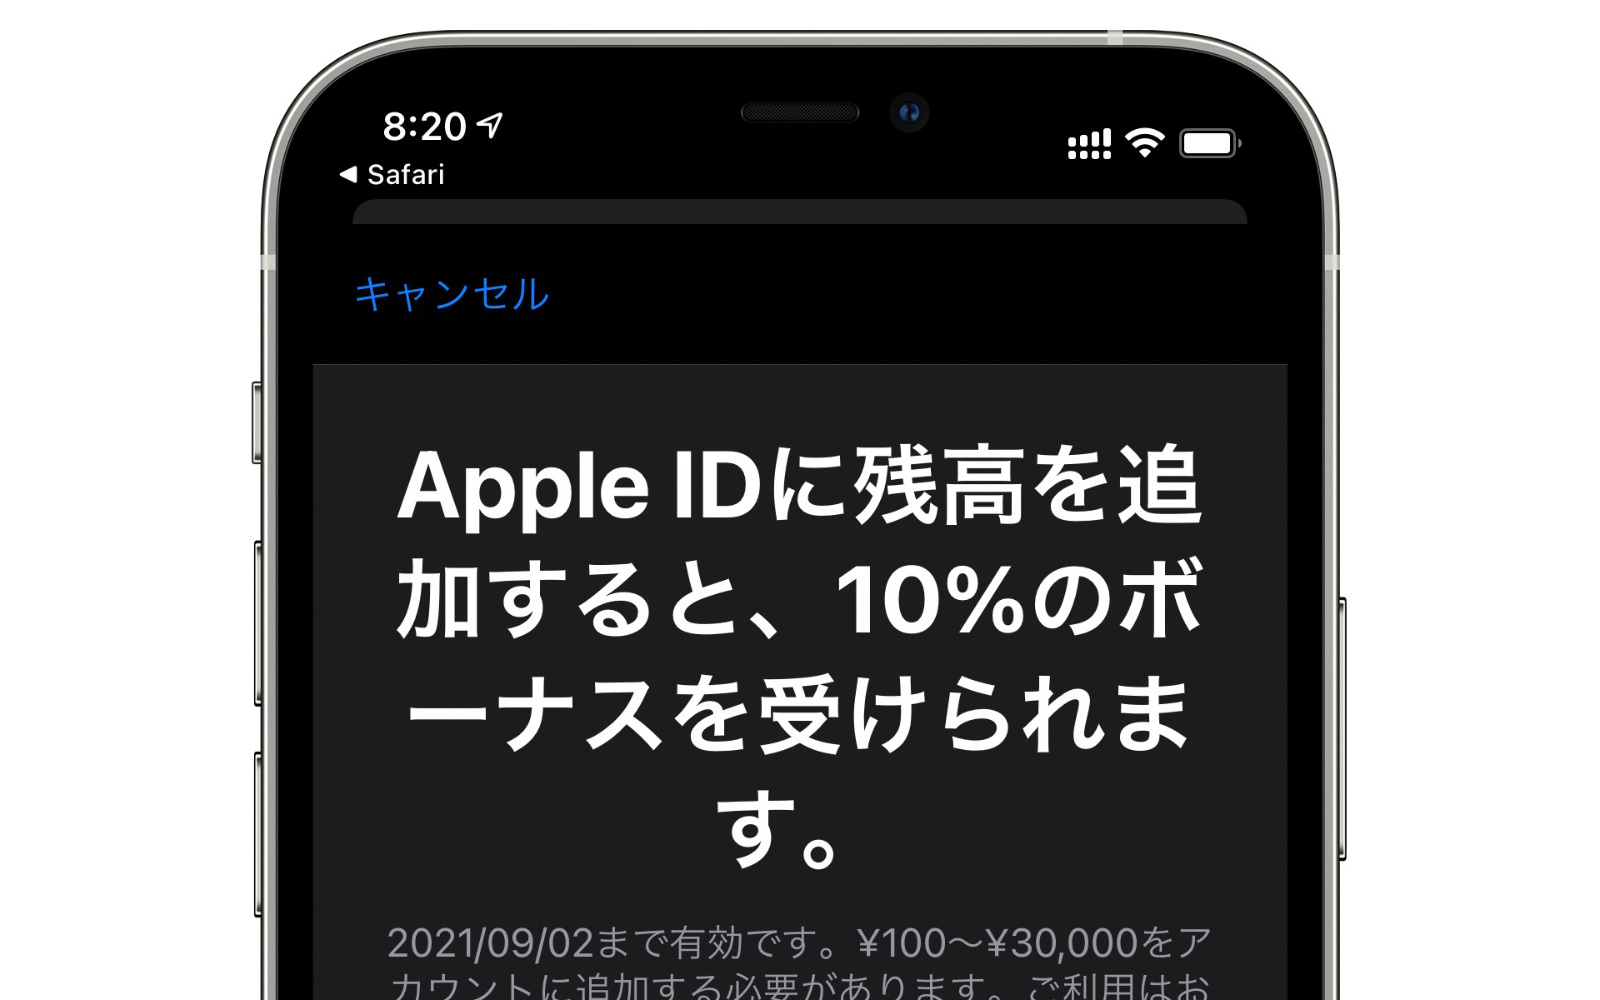 Apple ID Bobus